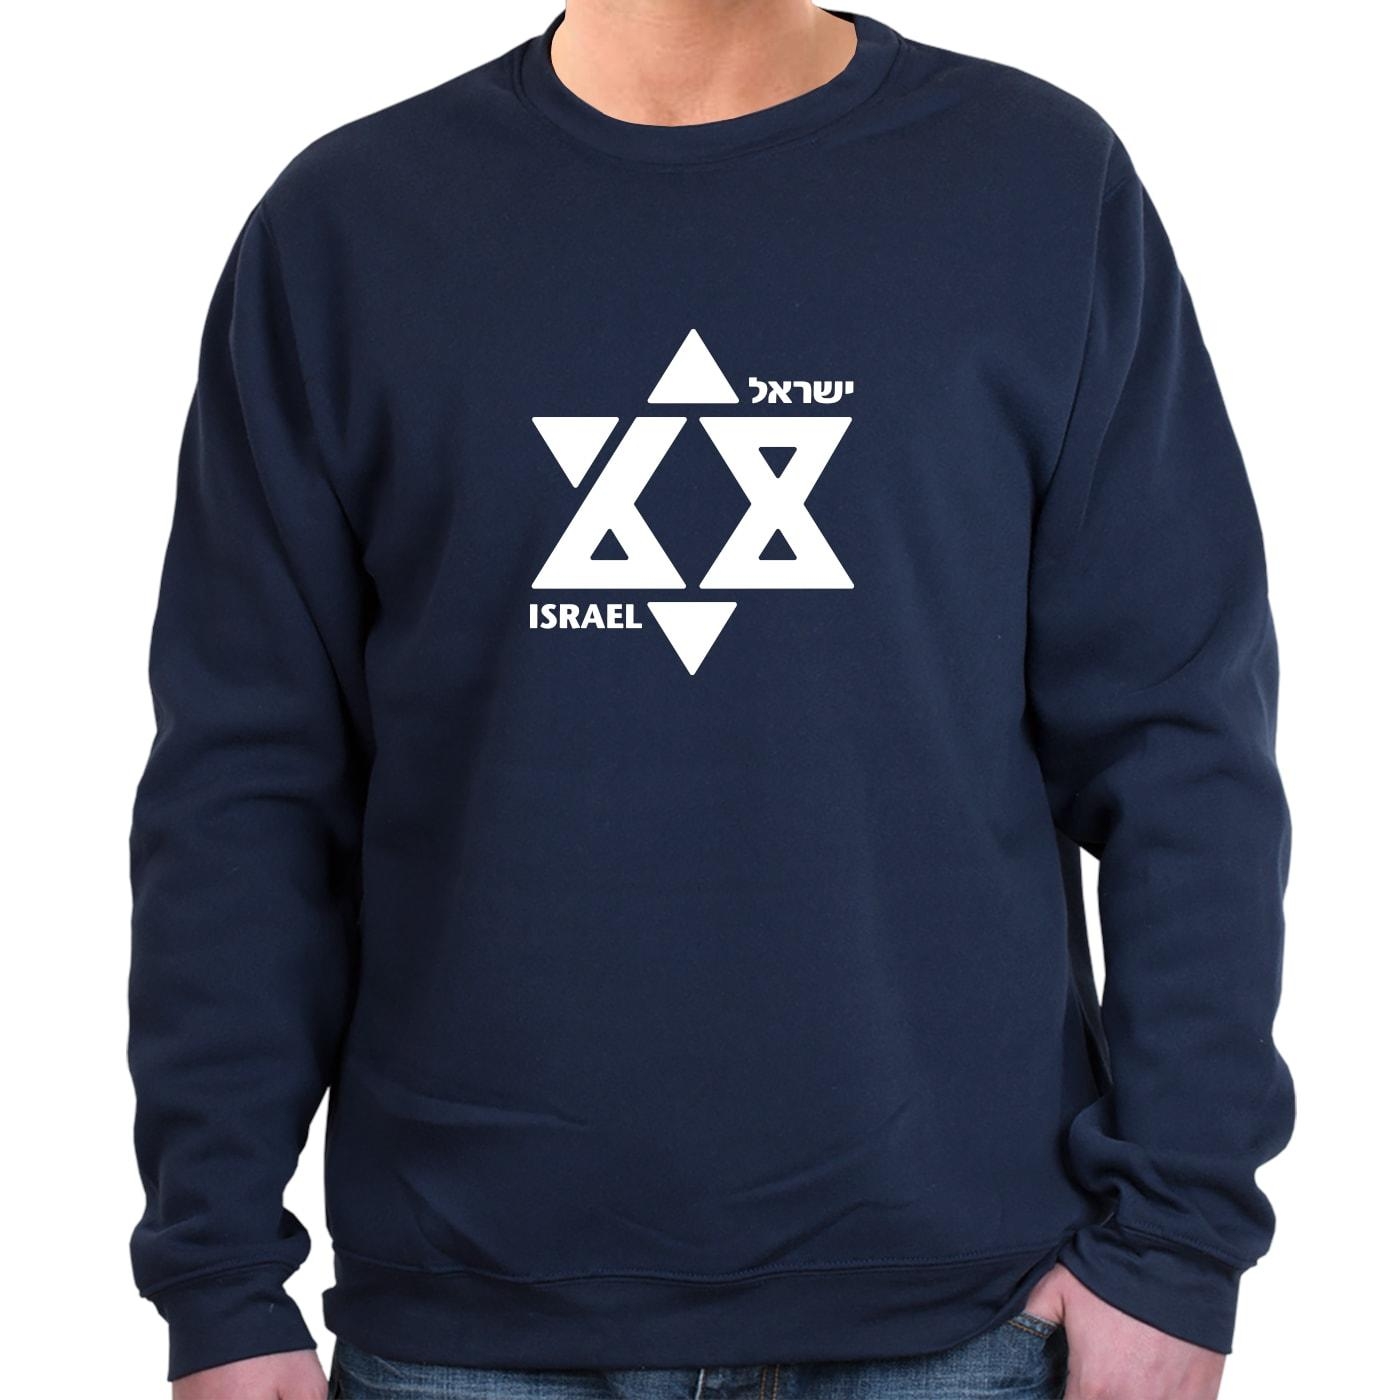 Israel at 68 Star of David Sweatshirt (Choice of Colors) - 1